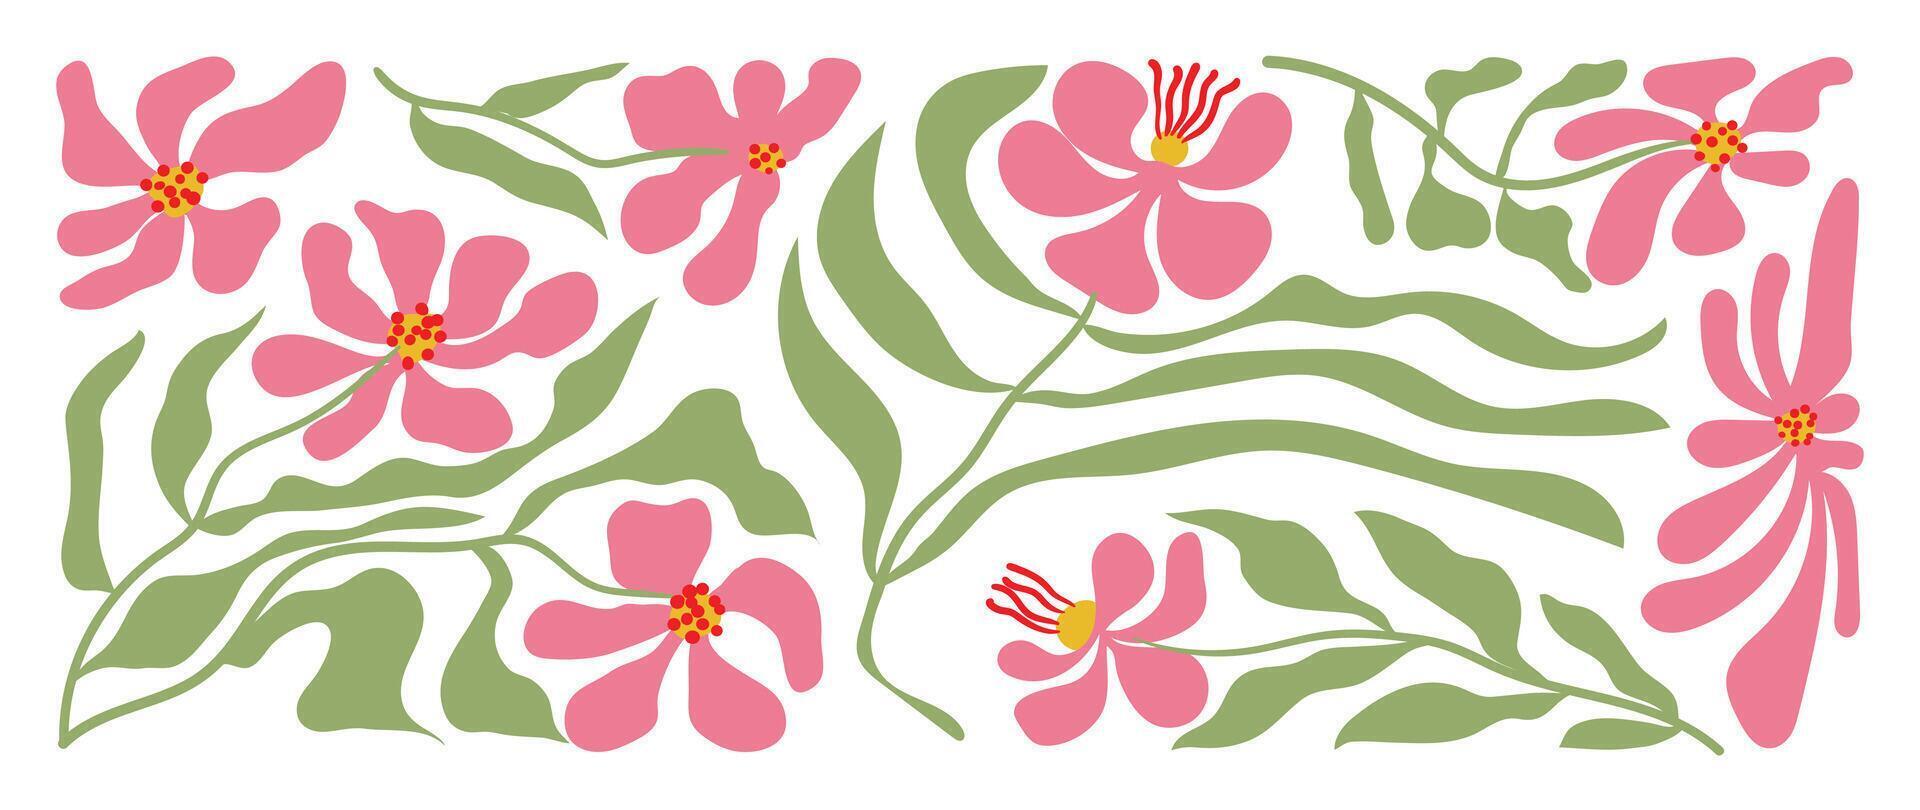 abstract botanisch achtergrond . groen en roze kleur behang van tropisch planten, bloem, blad takken, bladeren. gebladerte ontwerp voor banier, afdrukken, decor, muur kunst, decoratie. vector